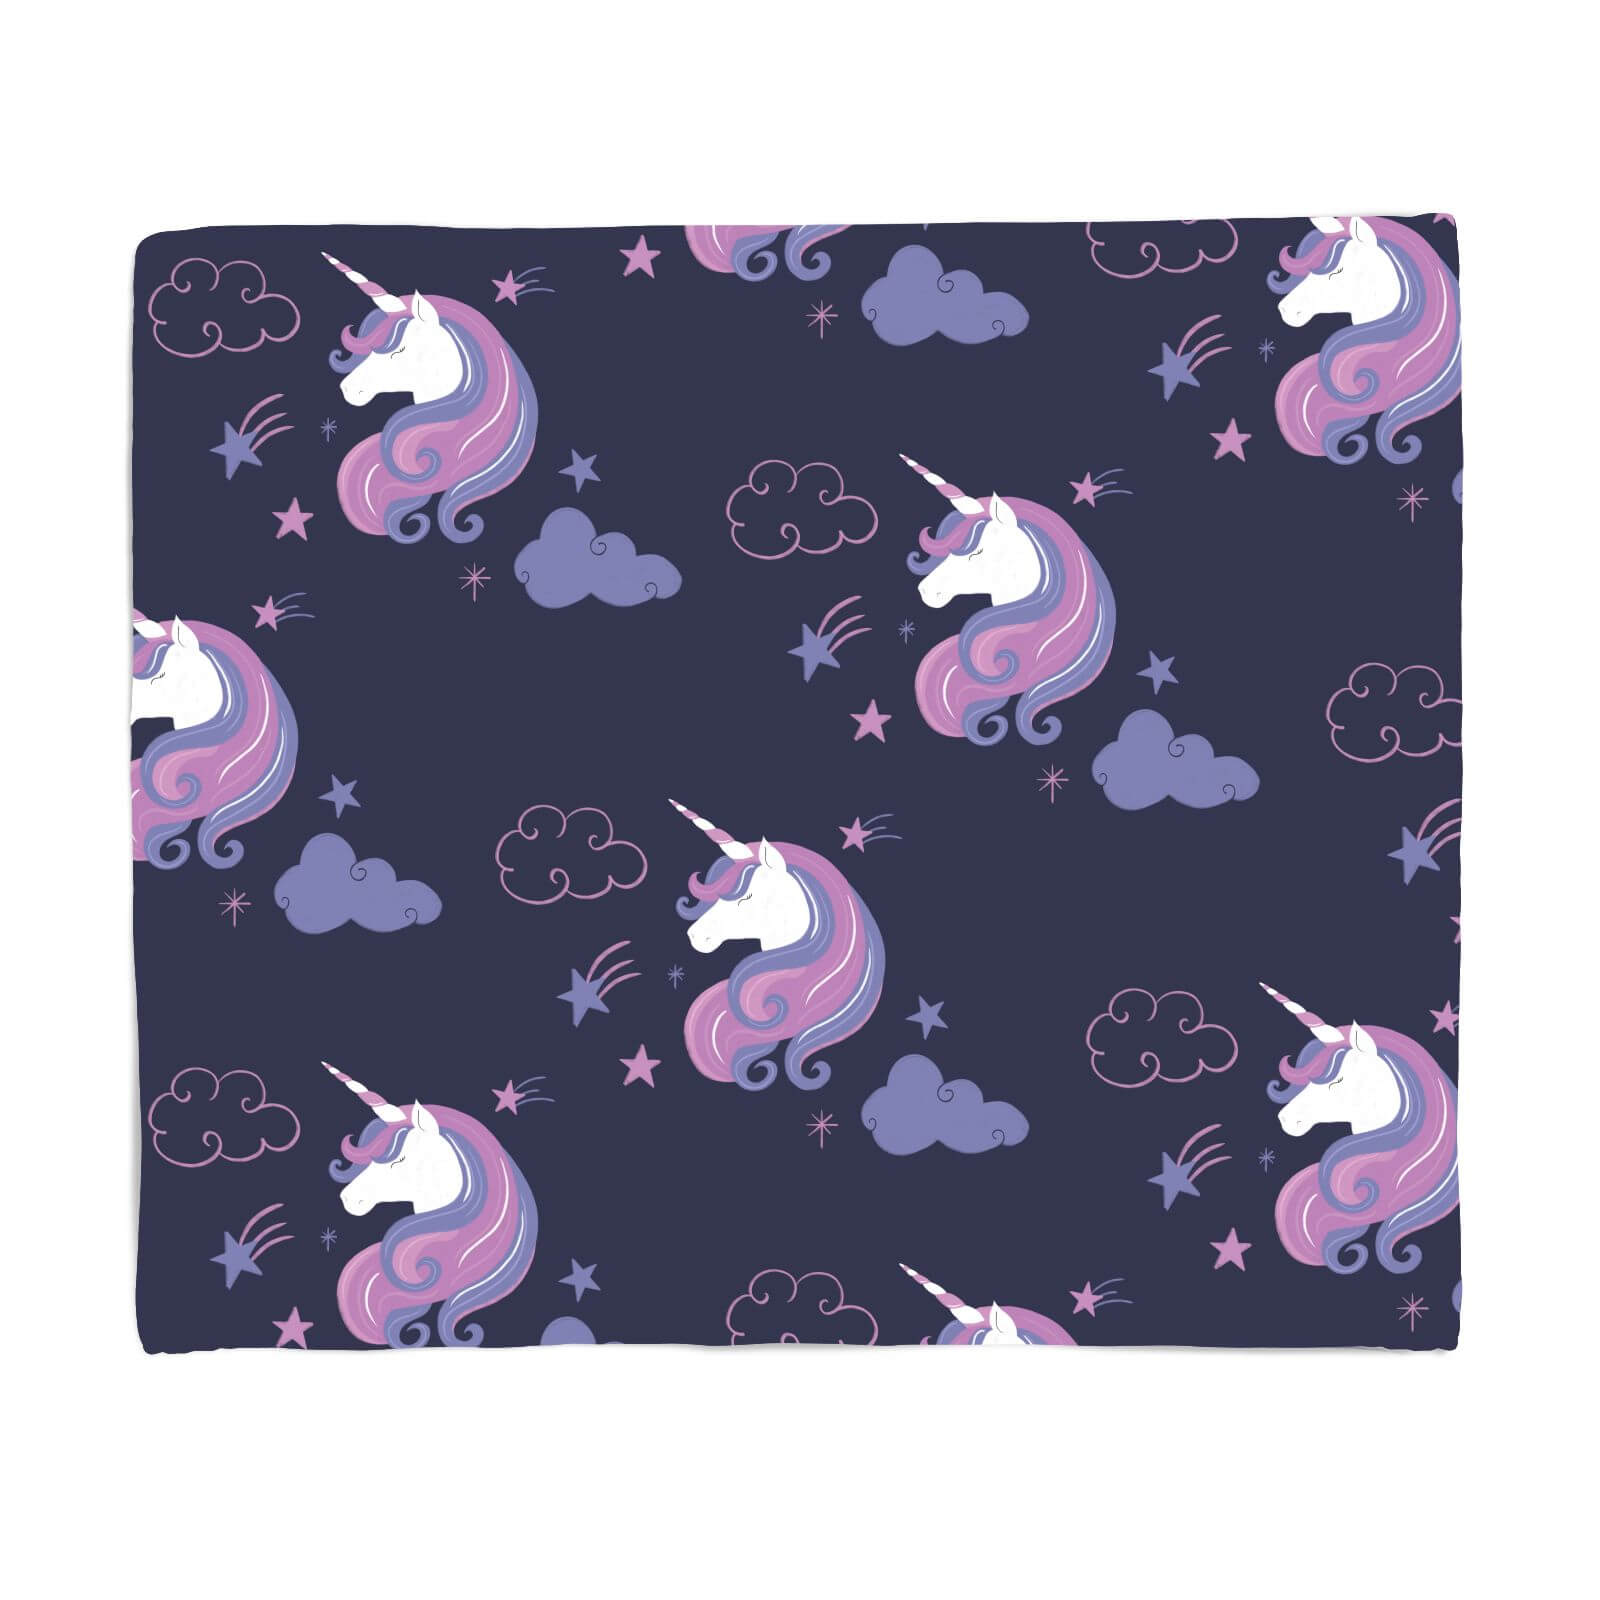 Unicorn Dreams Pattern Fleece Blanket - S